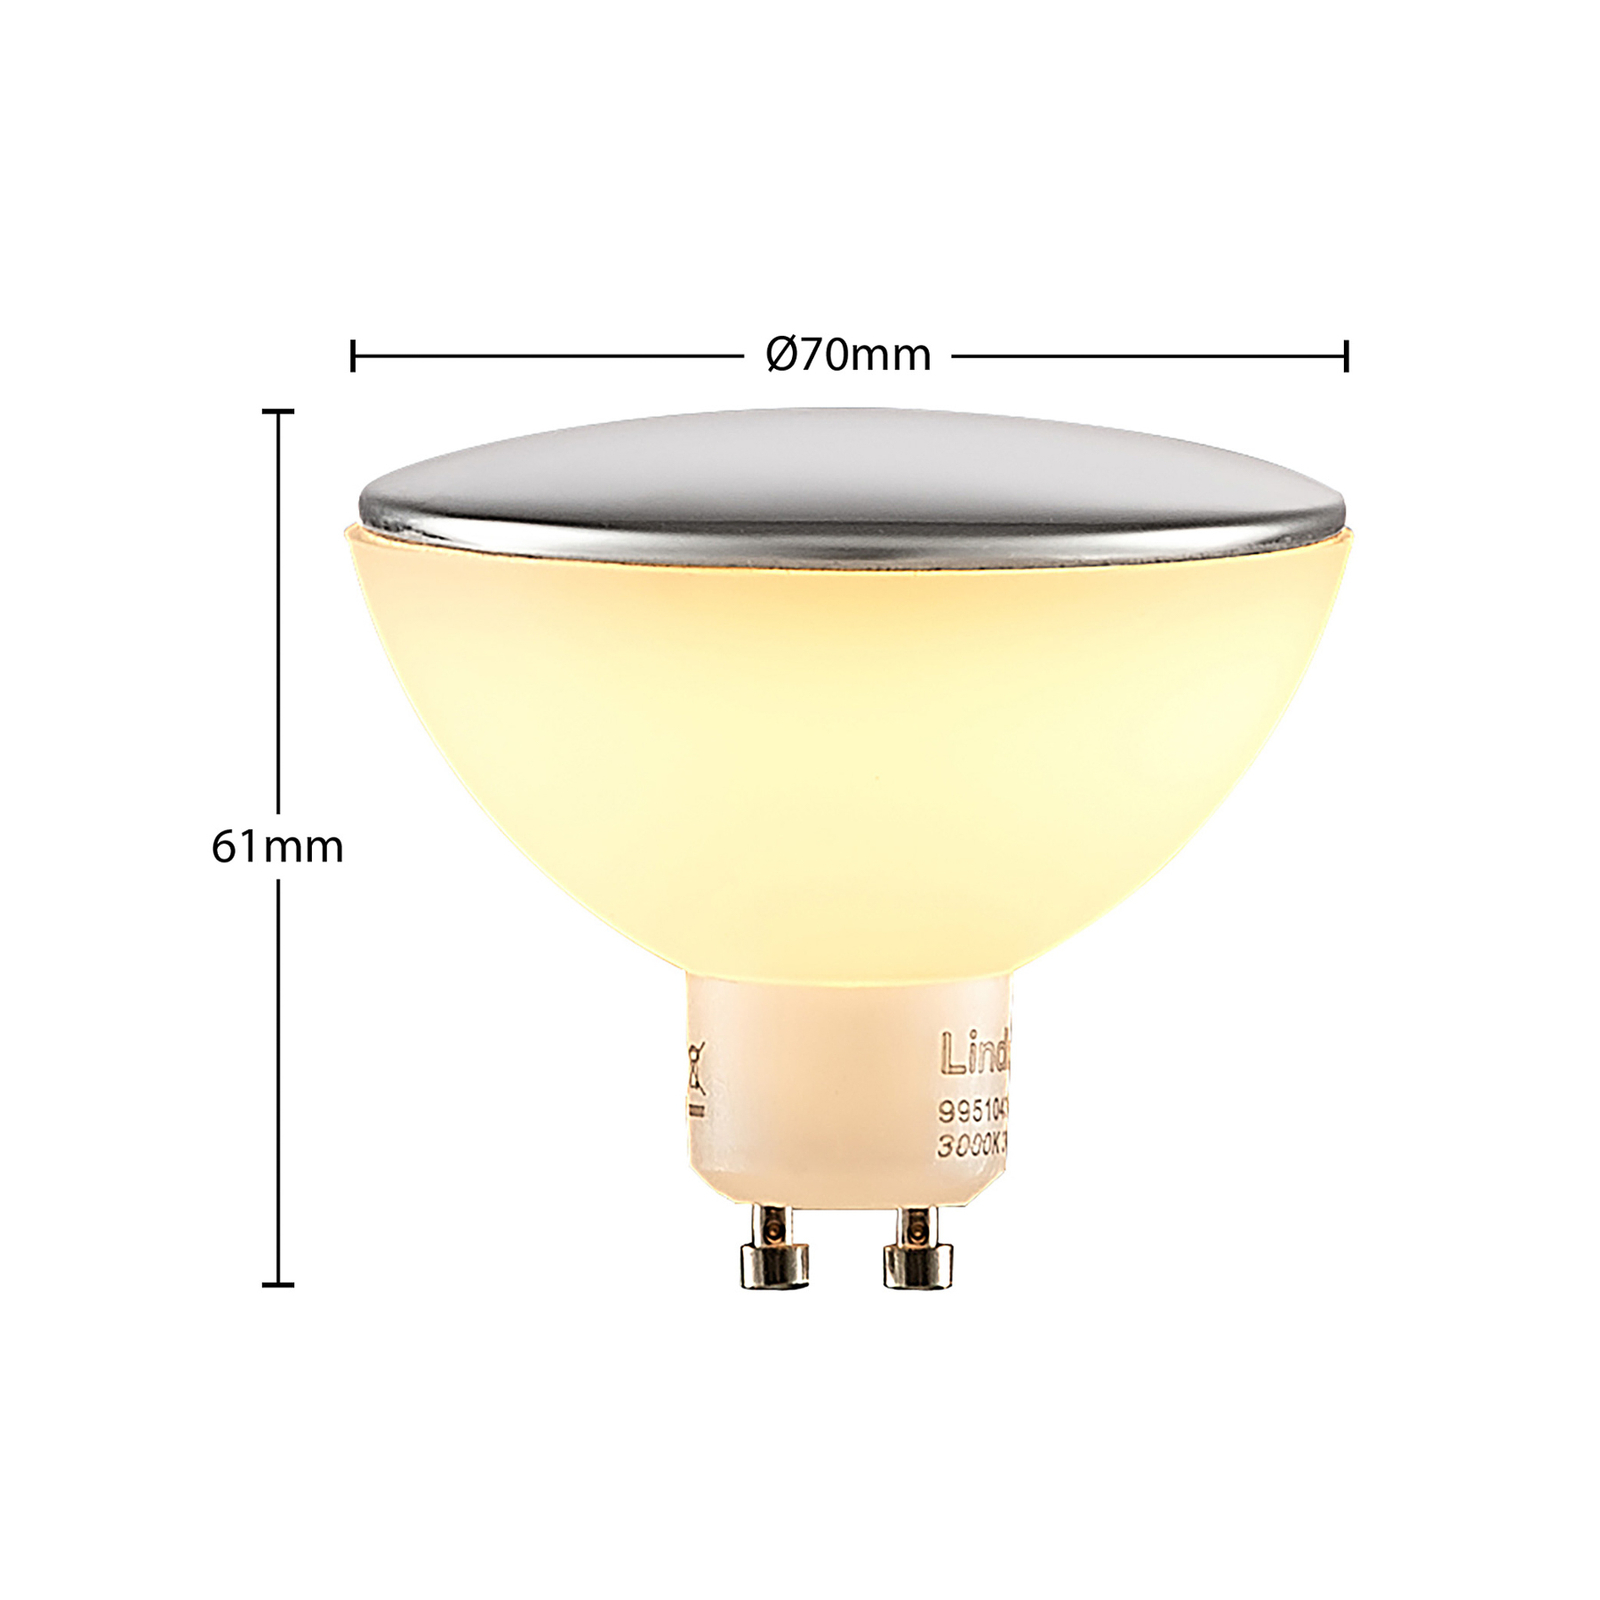 Lindby LED-Kopfspiegellampe GU10 5W CCT chrom